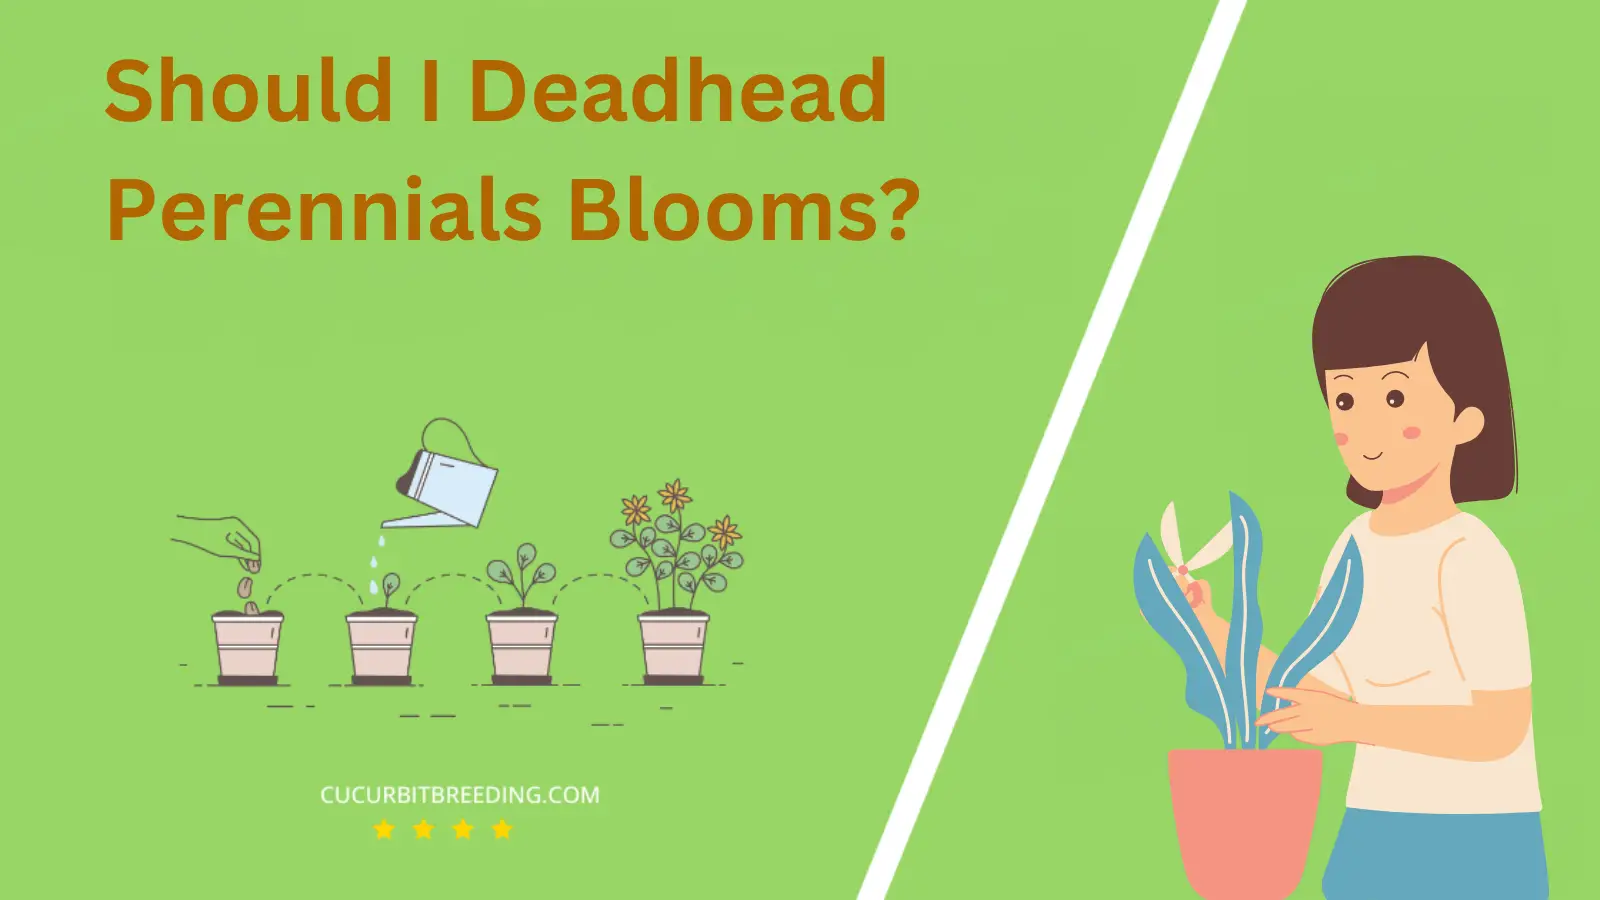 Should I Deadhead Perennials Blooms?